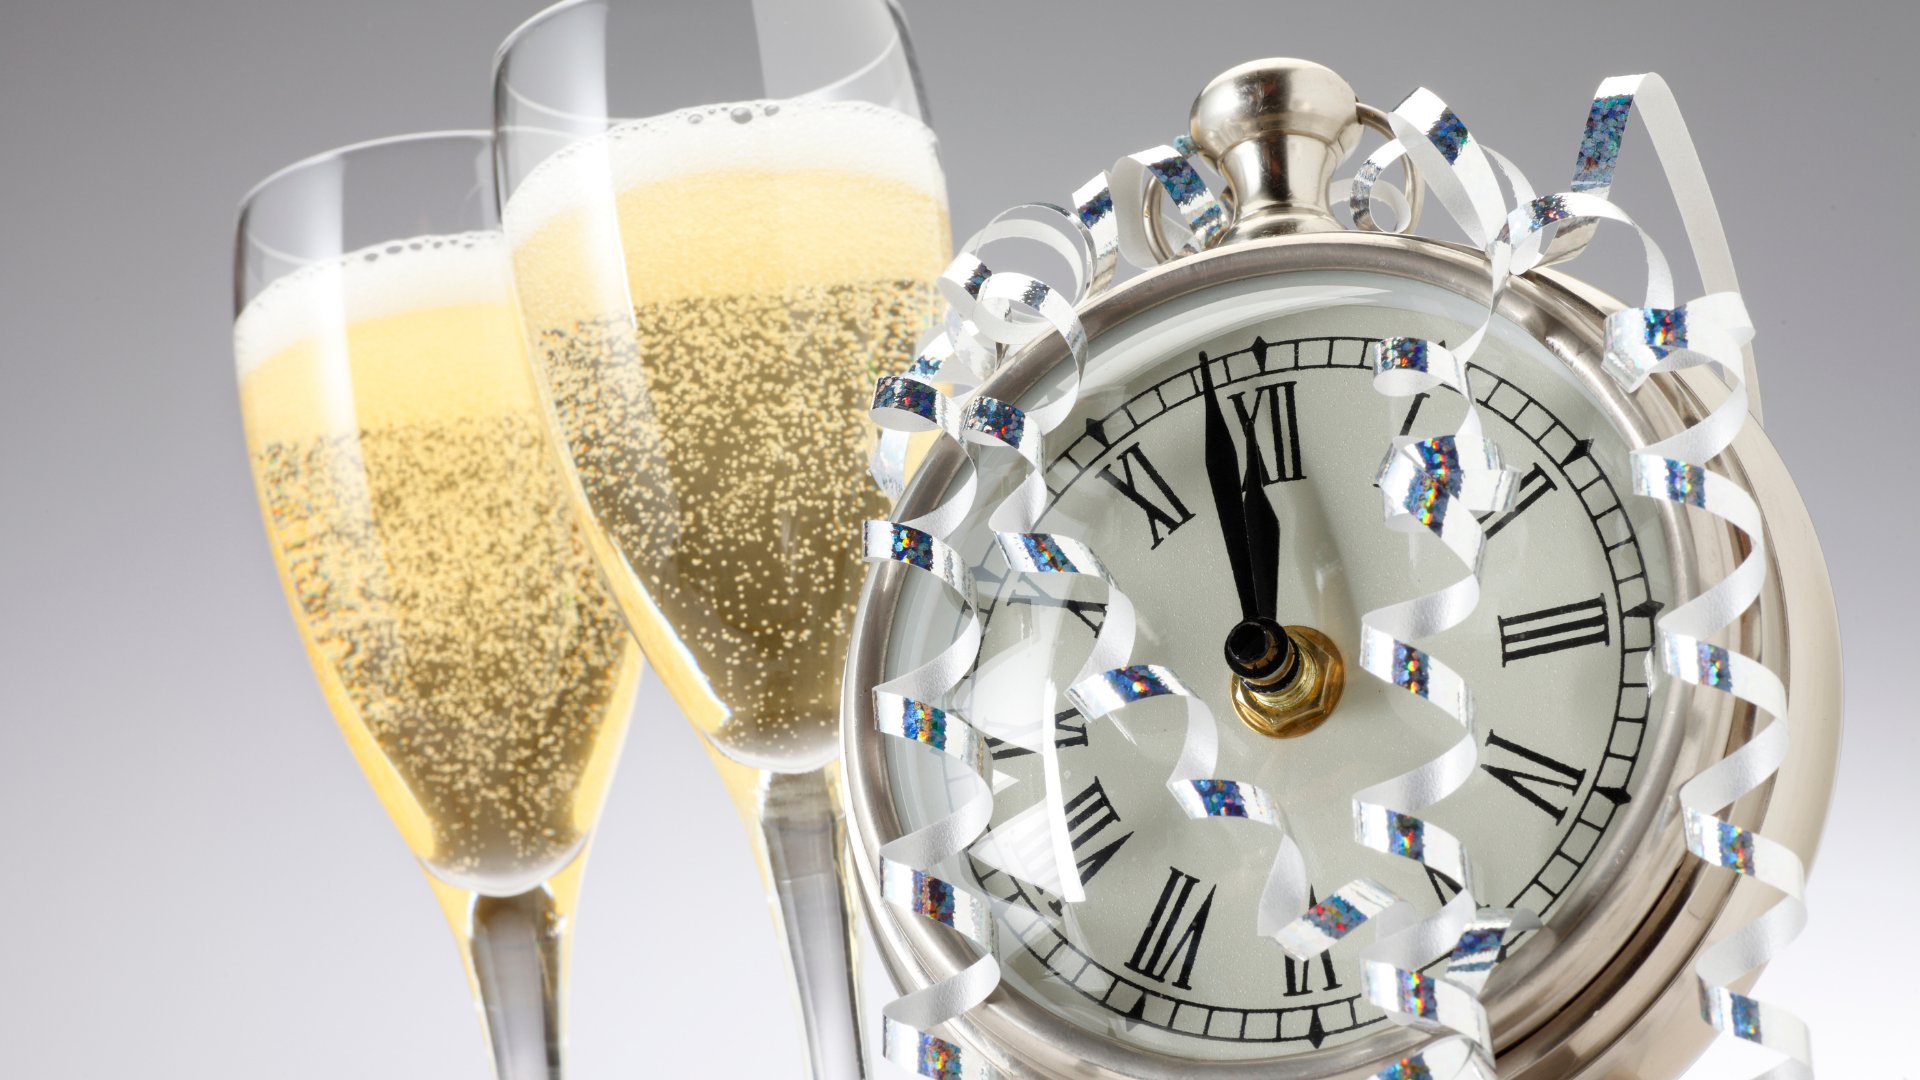 Relógio marcando meia noite com fitas prateadas e duas taças de champagne